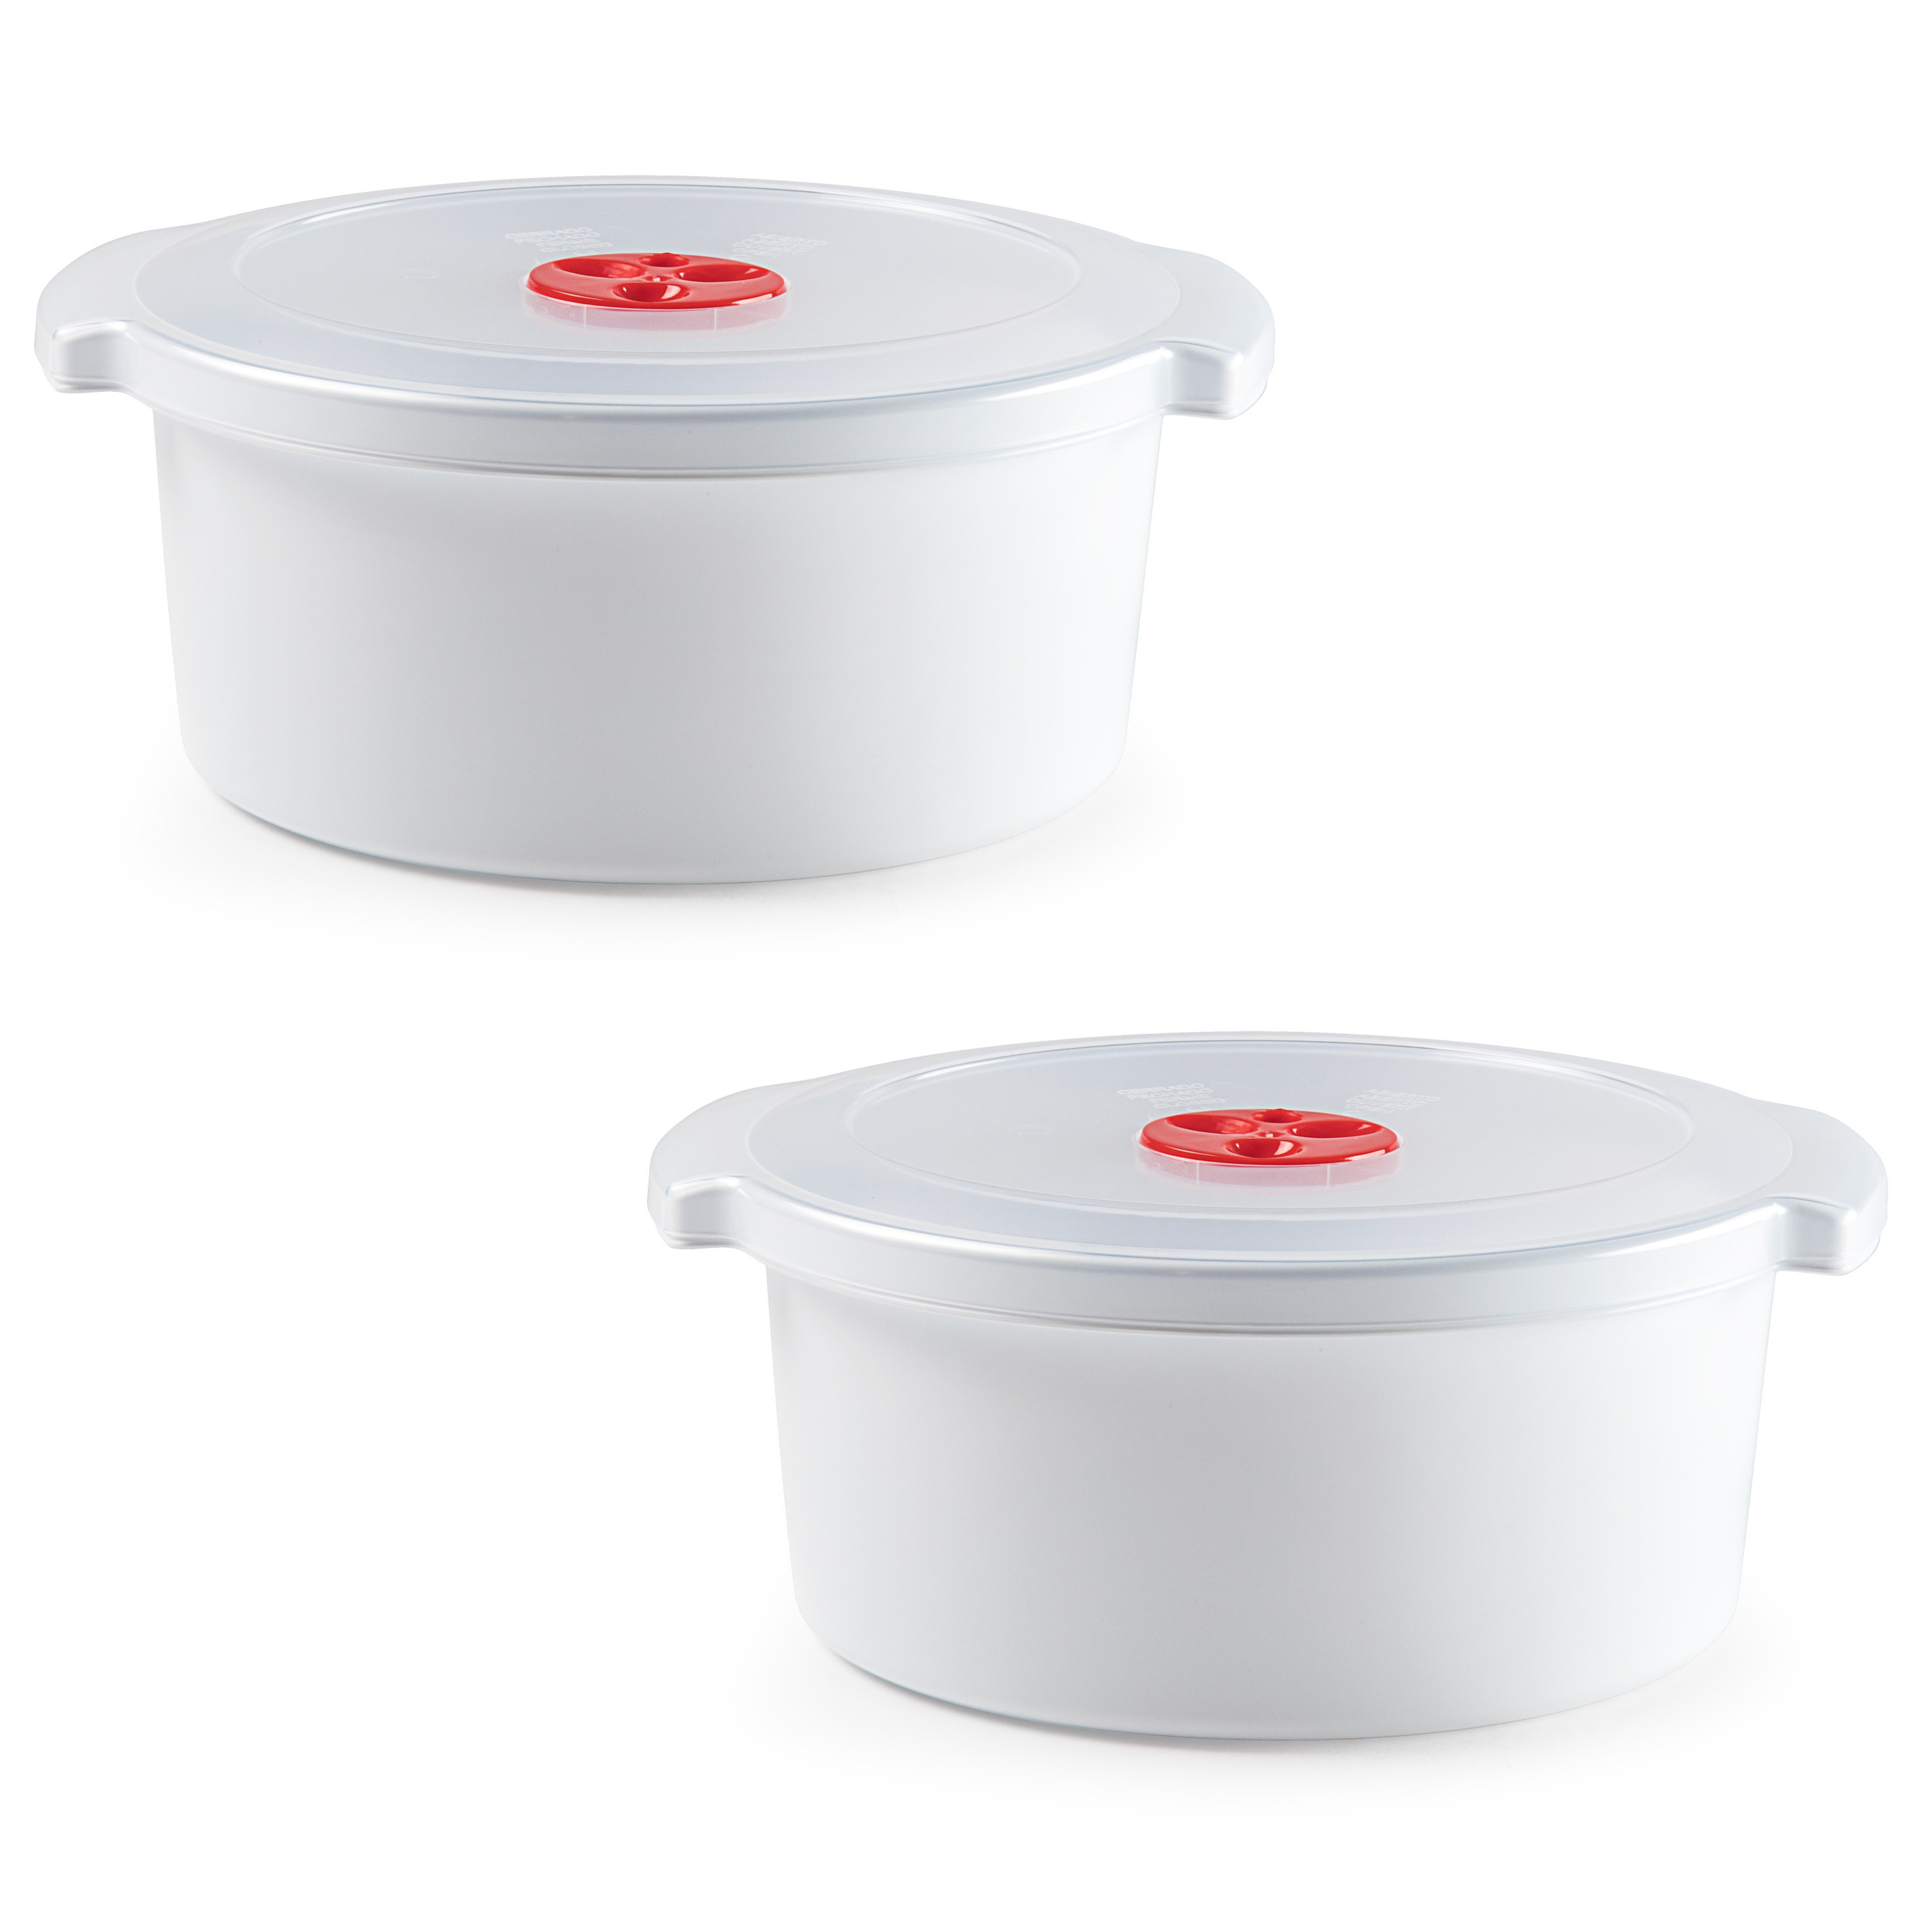 Set van 2x stuks magnetron voedsel opwarm container-schaal van 3 liter 25 x 23 x 10 cm